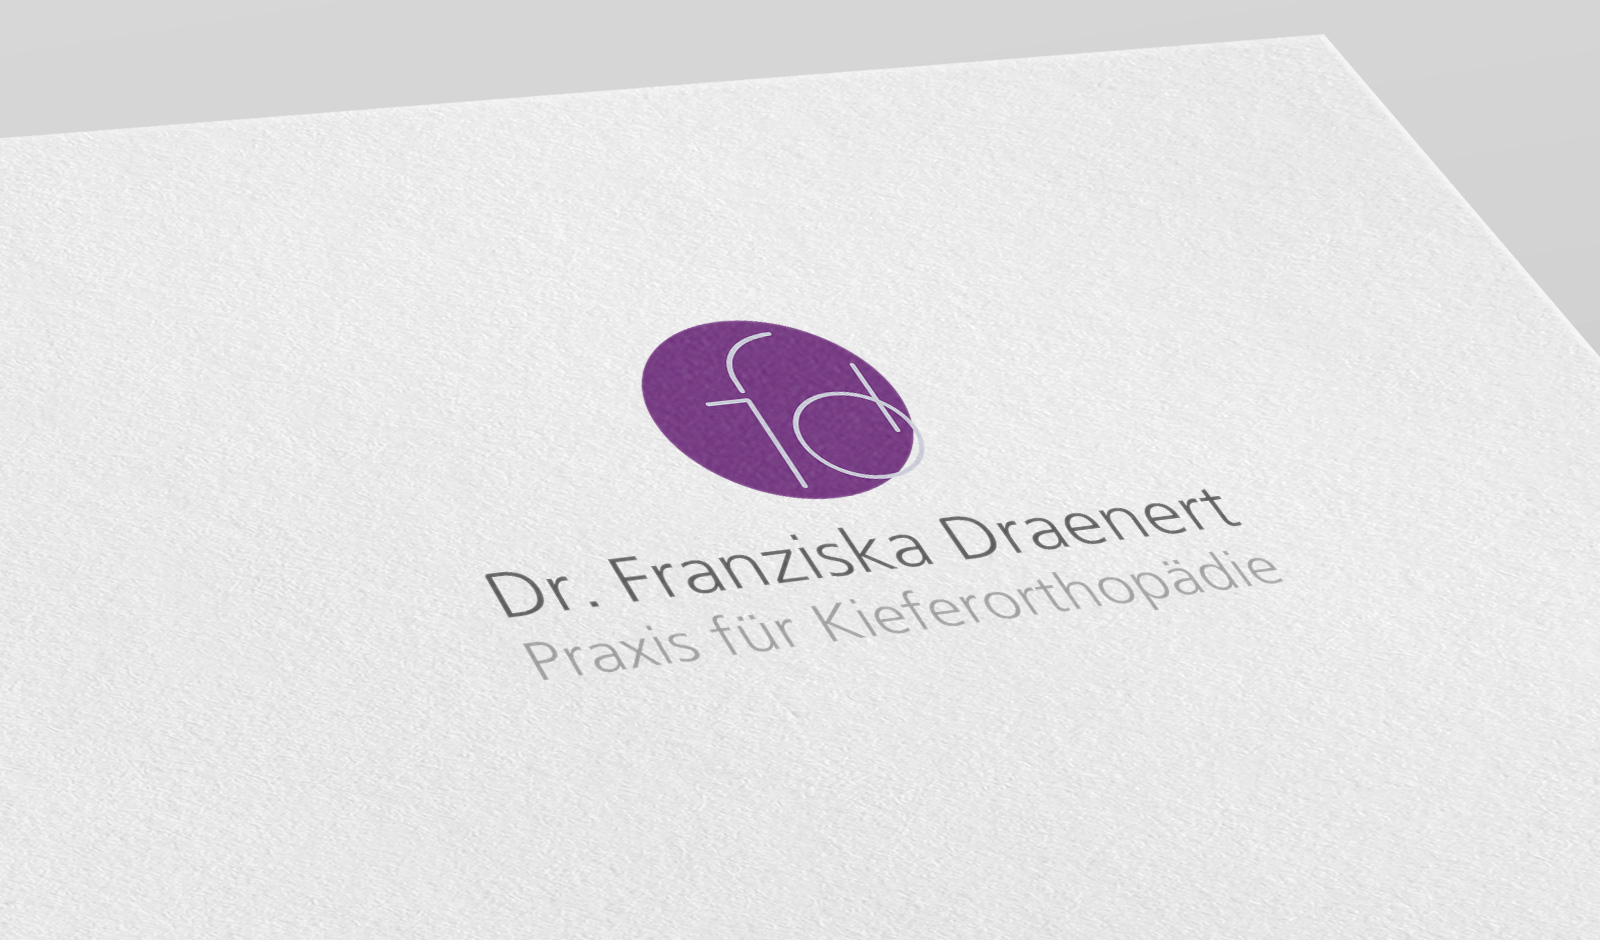 Praxis für Kieferorthopädie Dr. Franziska Draenert in München Trudering, Logodesign